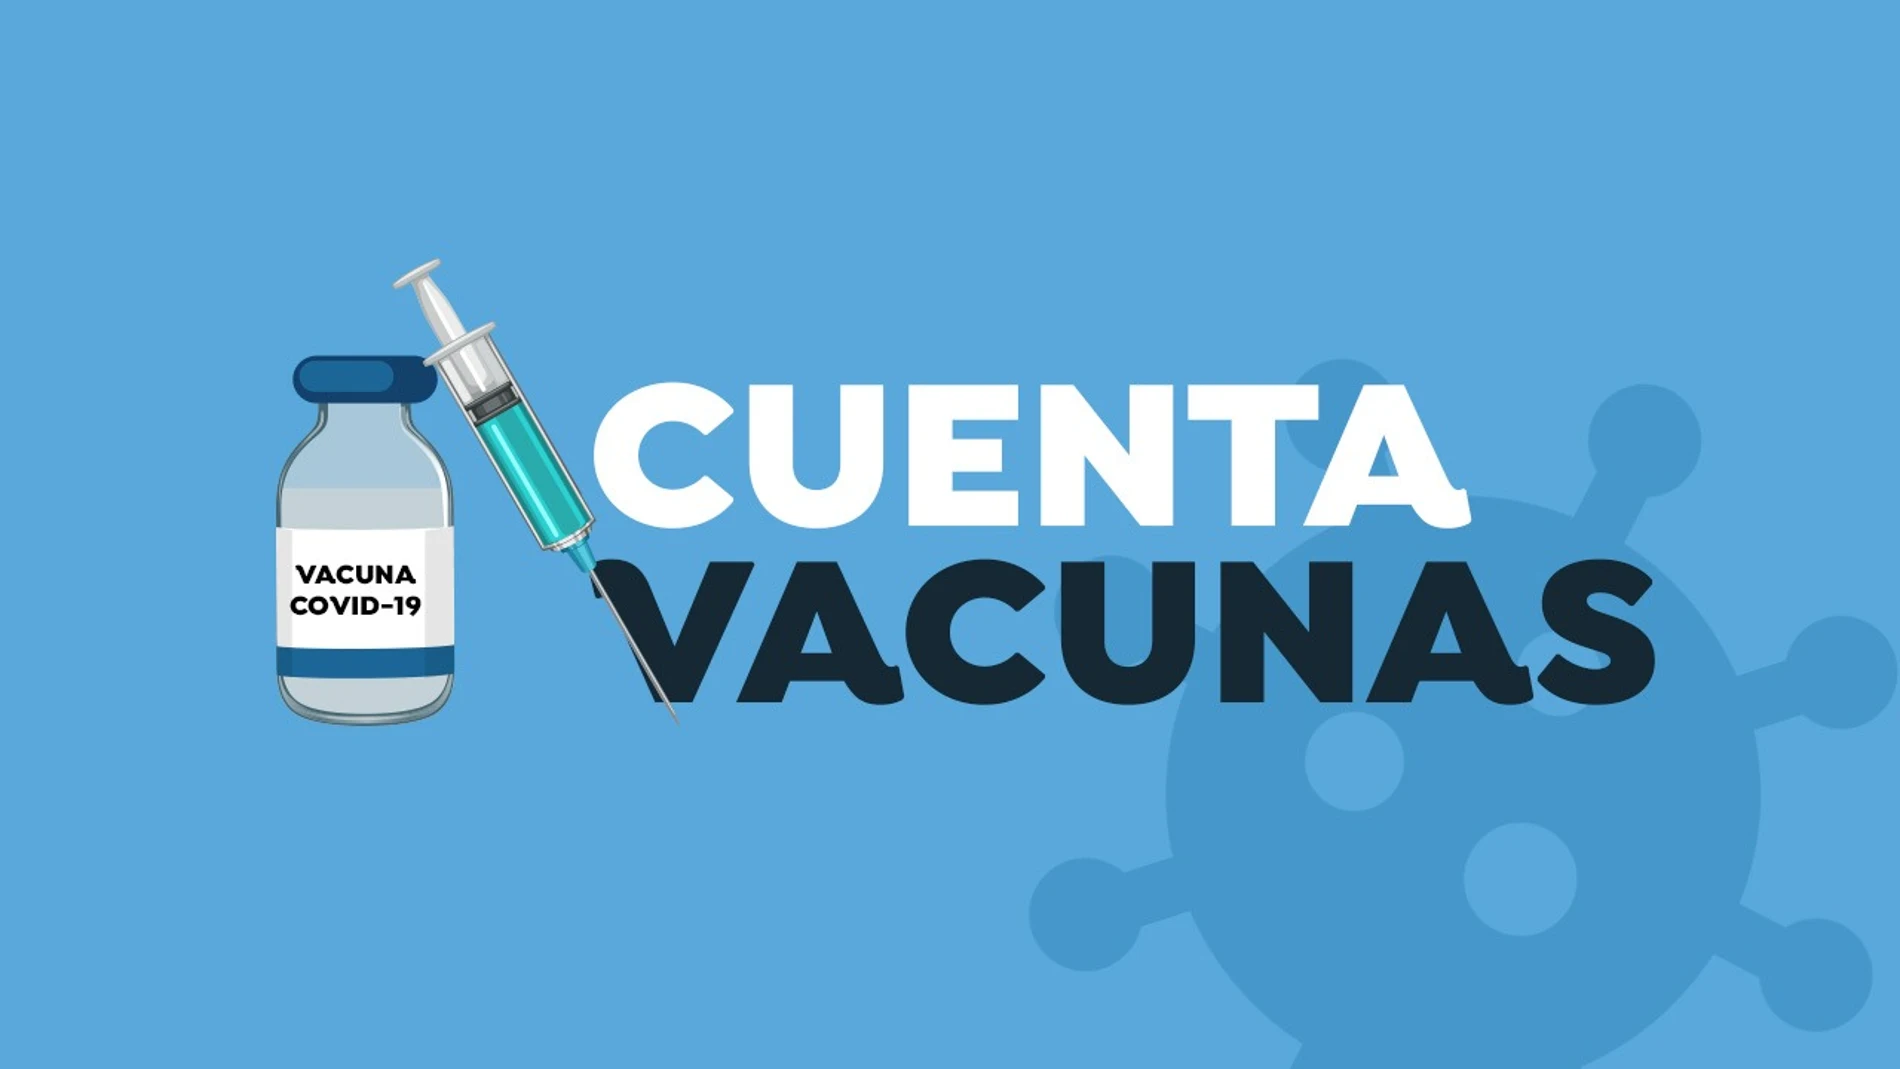 CuentaVacunas: Consulta cuántas personas se han vacunado contra el coronavirus en tu comunidad